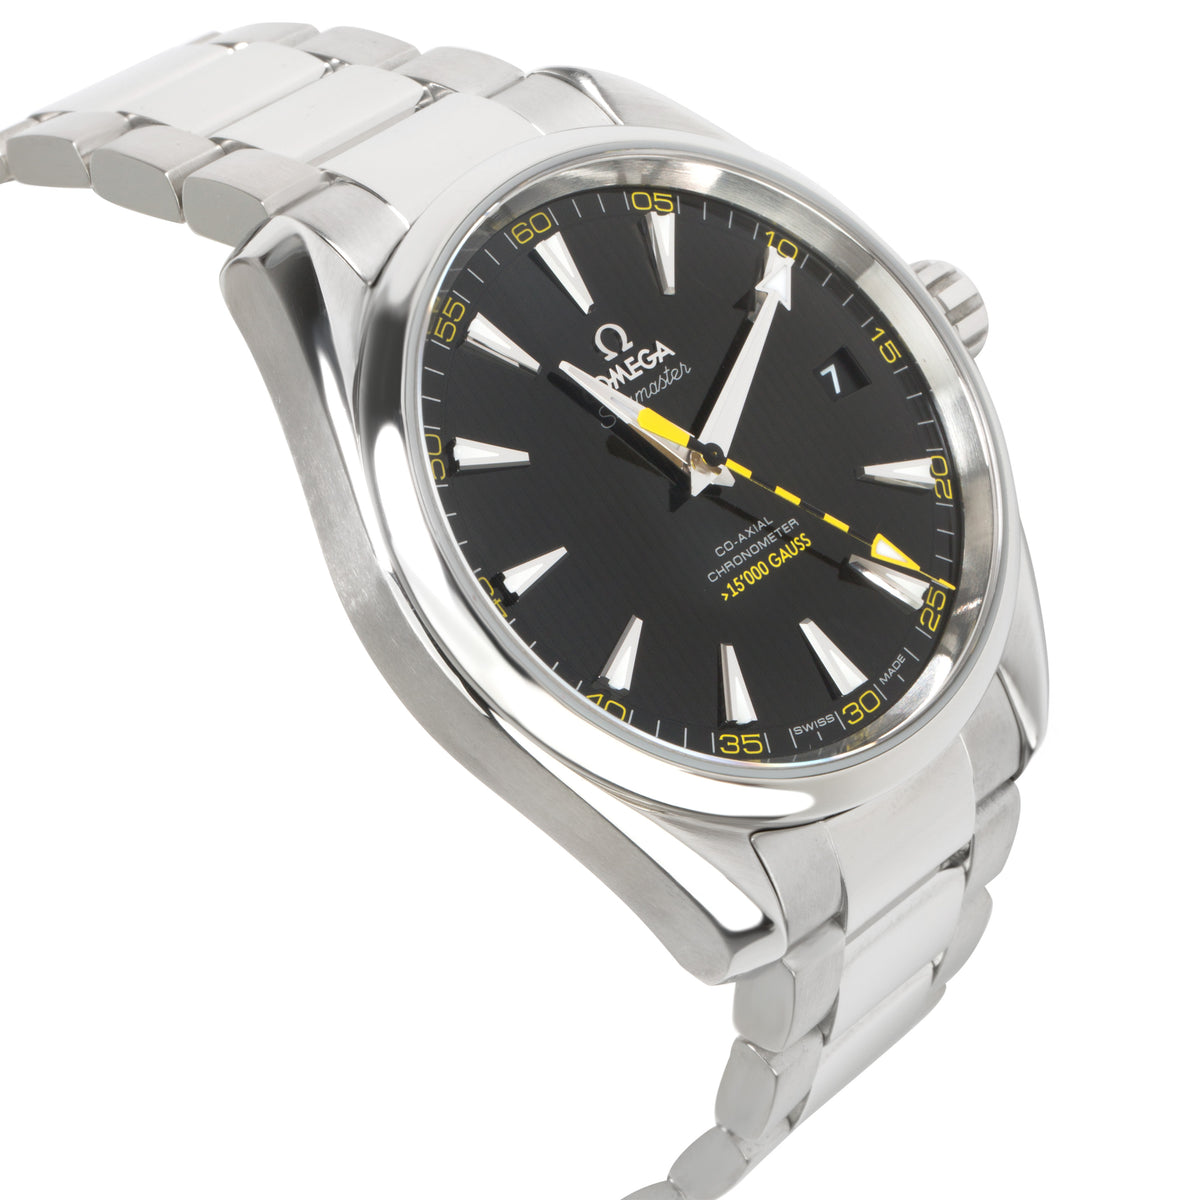 Omega Aqua Terra >15'000 Gauss 231.10.42.21.01.002 Men's Stainless Steel Watch